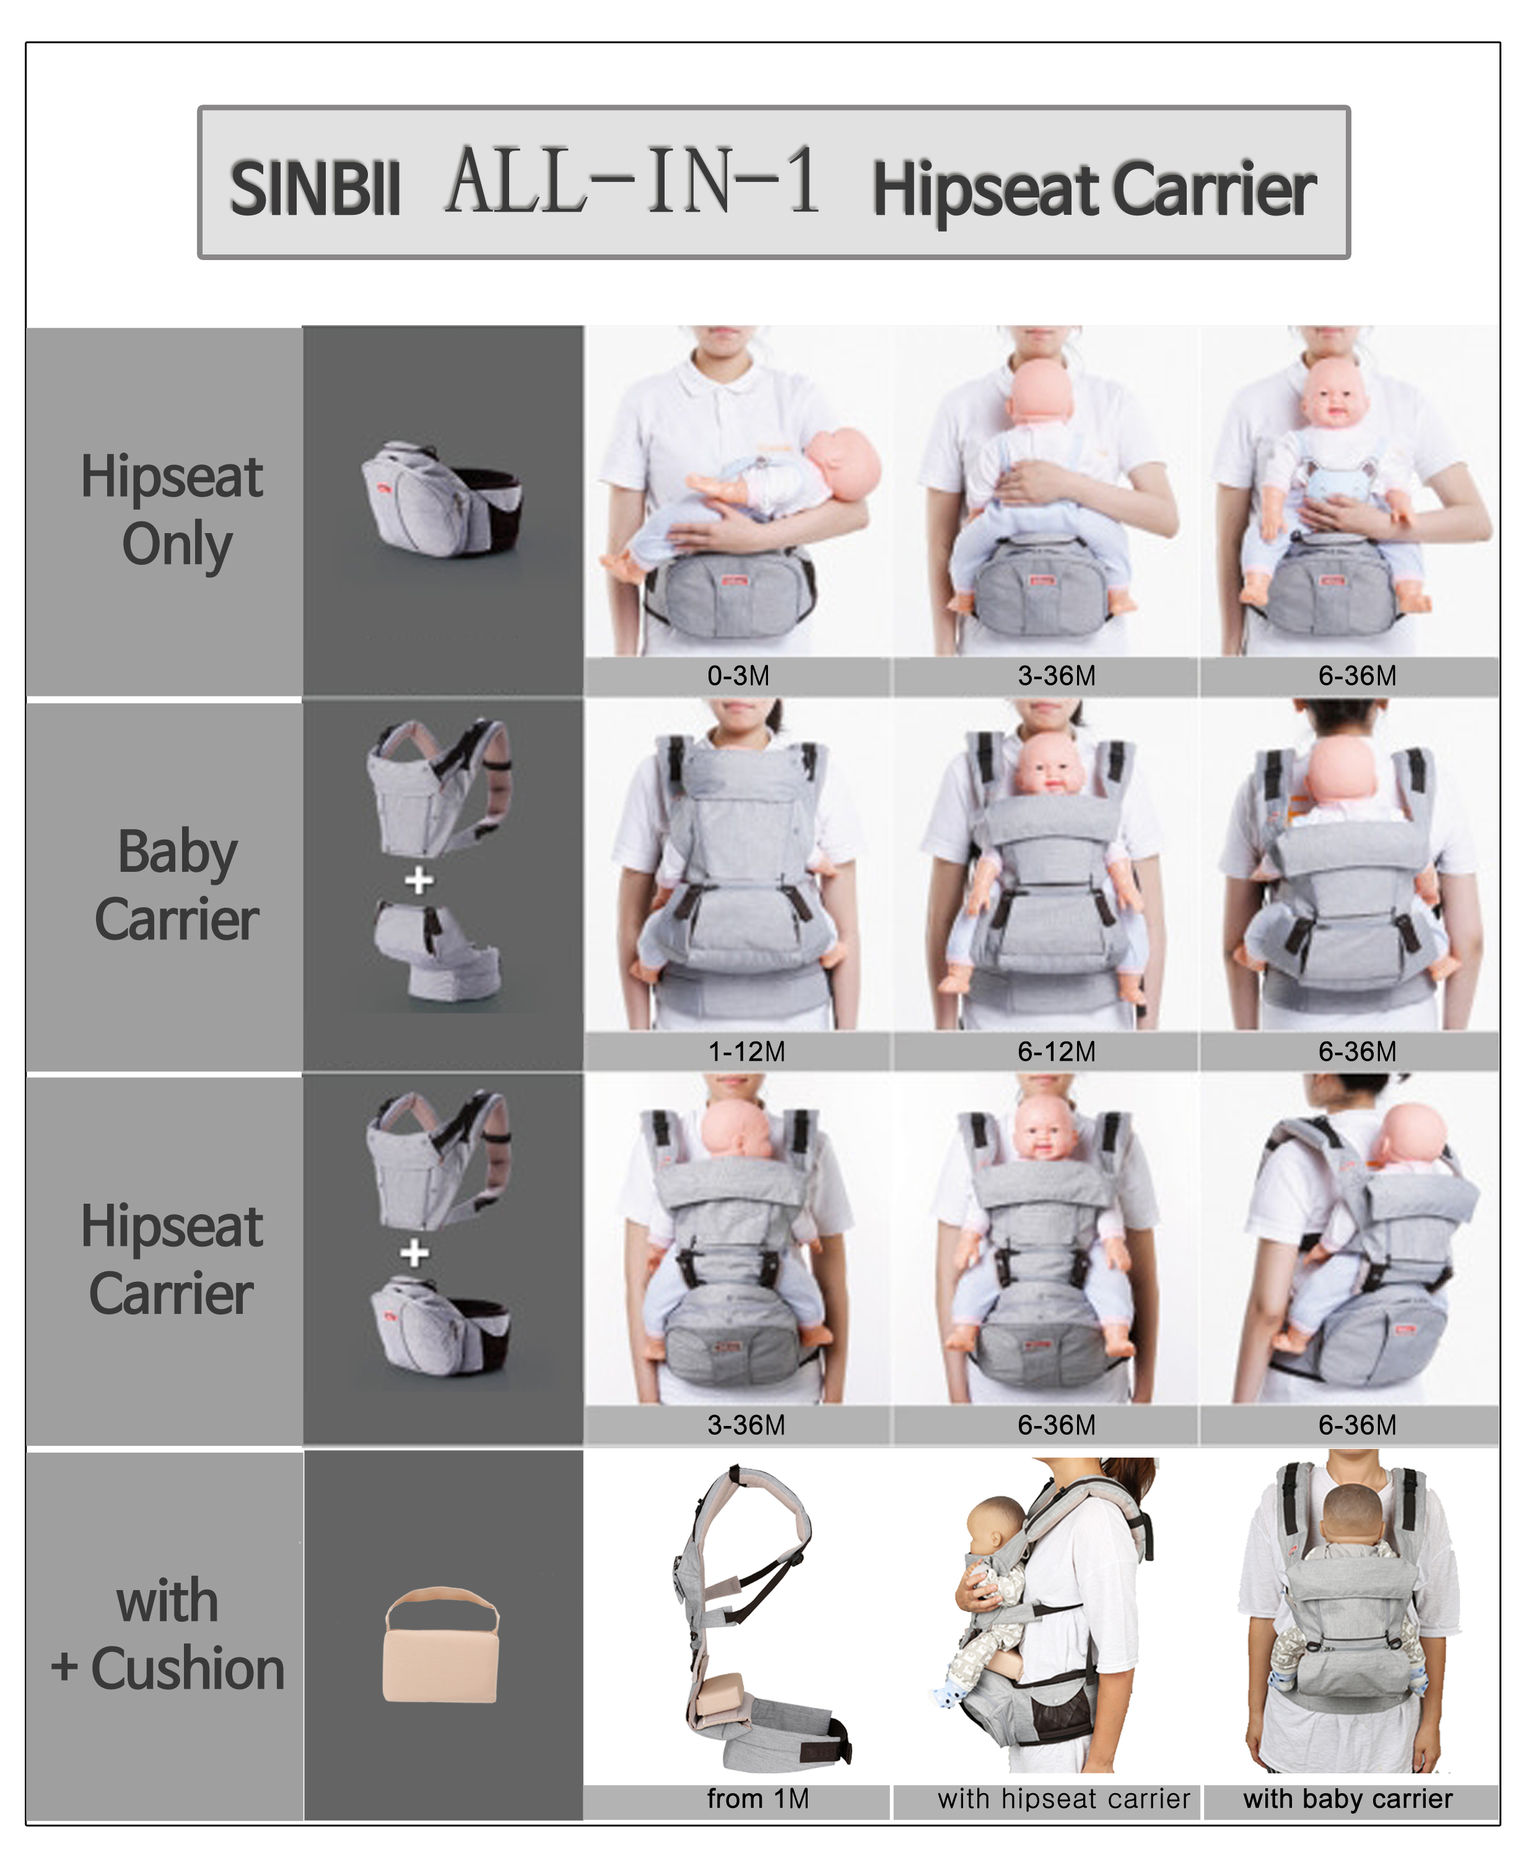 sinbii hipseat carrier